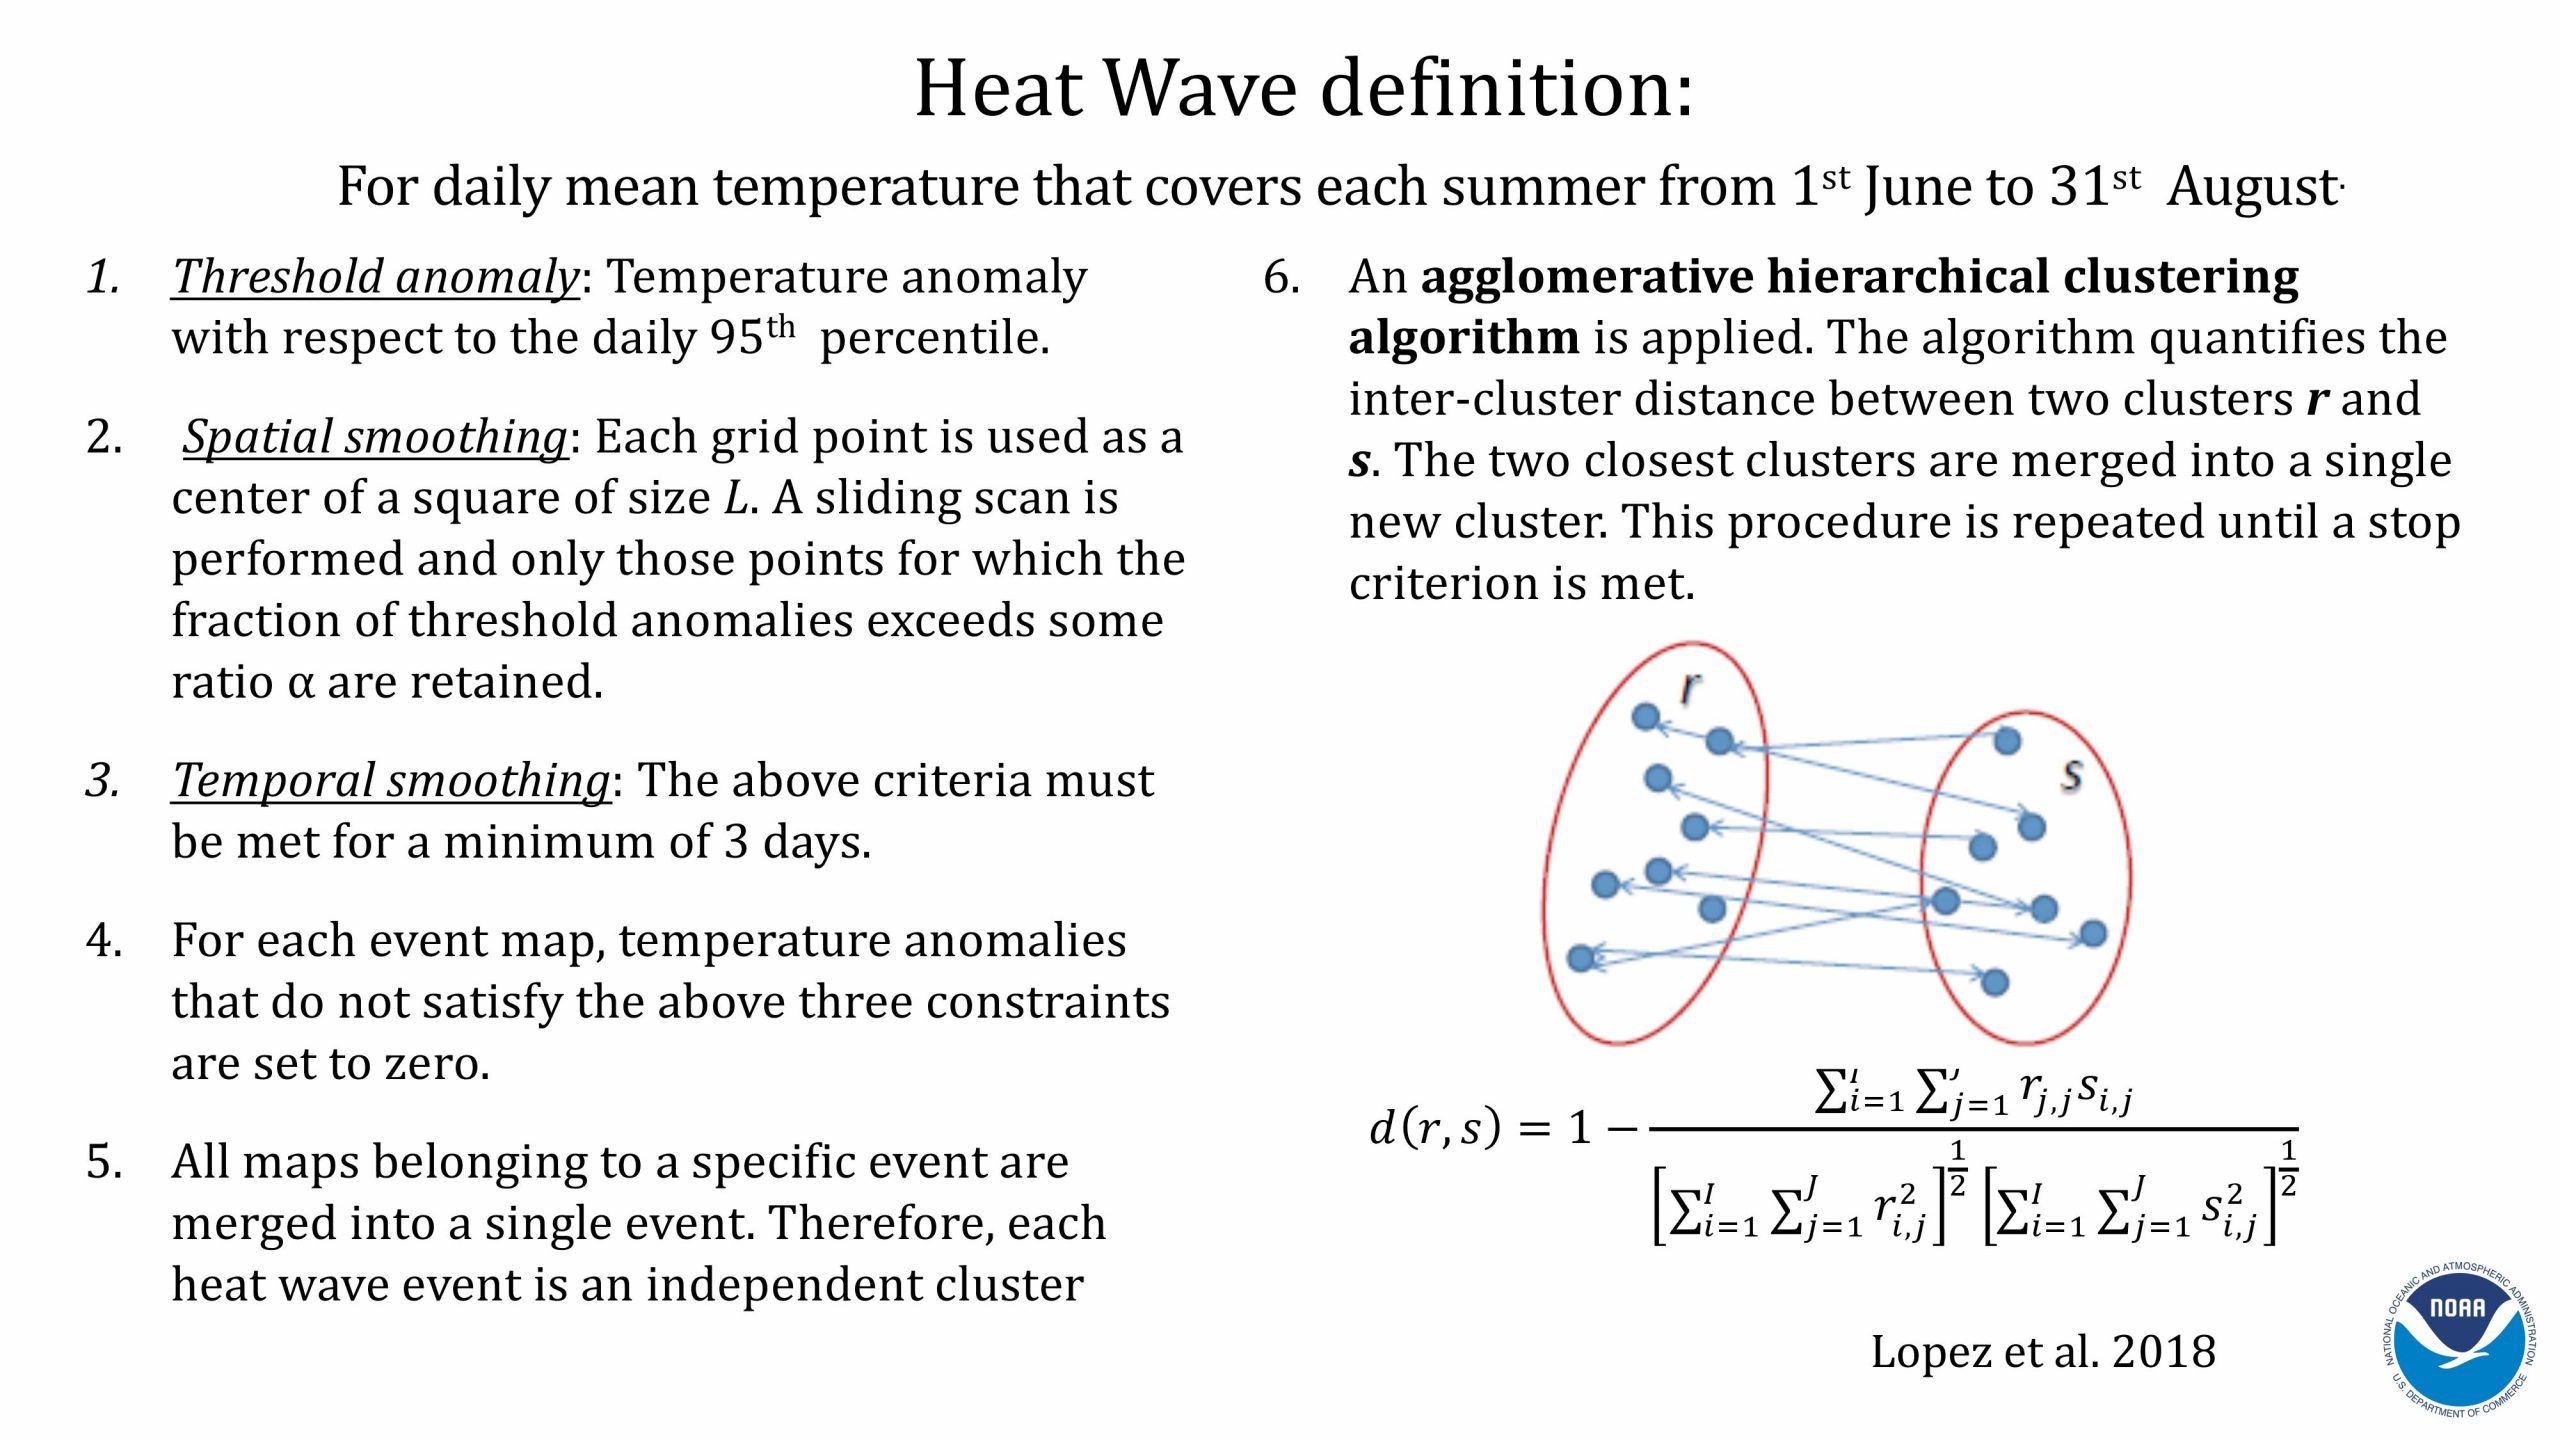 Presentación de Hosmay López sobre los monzones y las olas de calor. Diapositiva 10